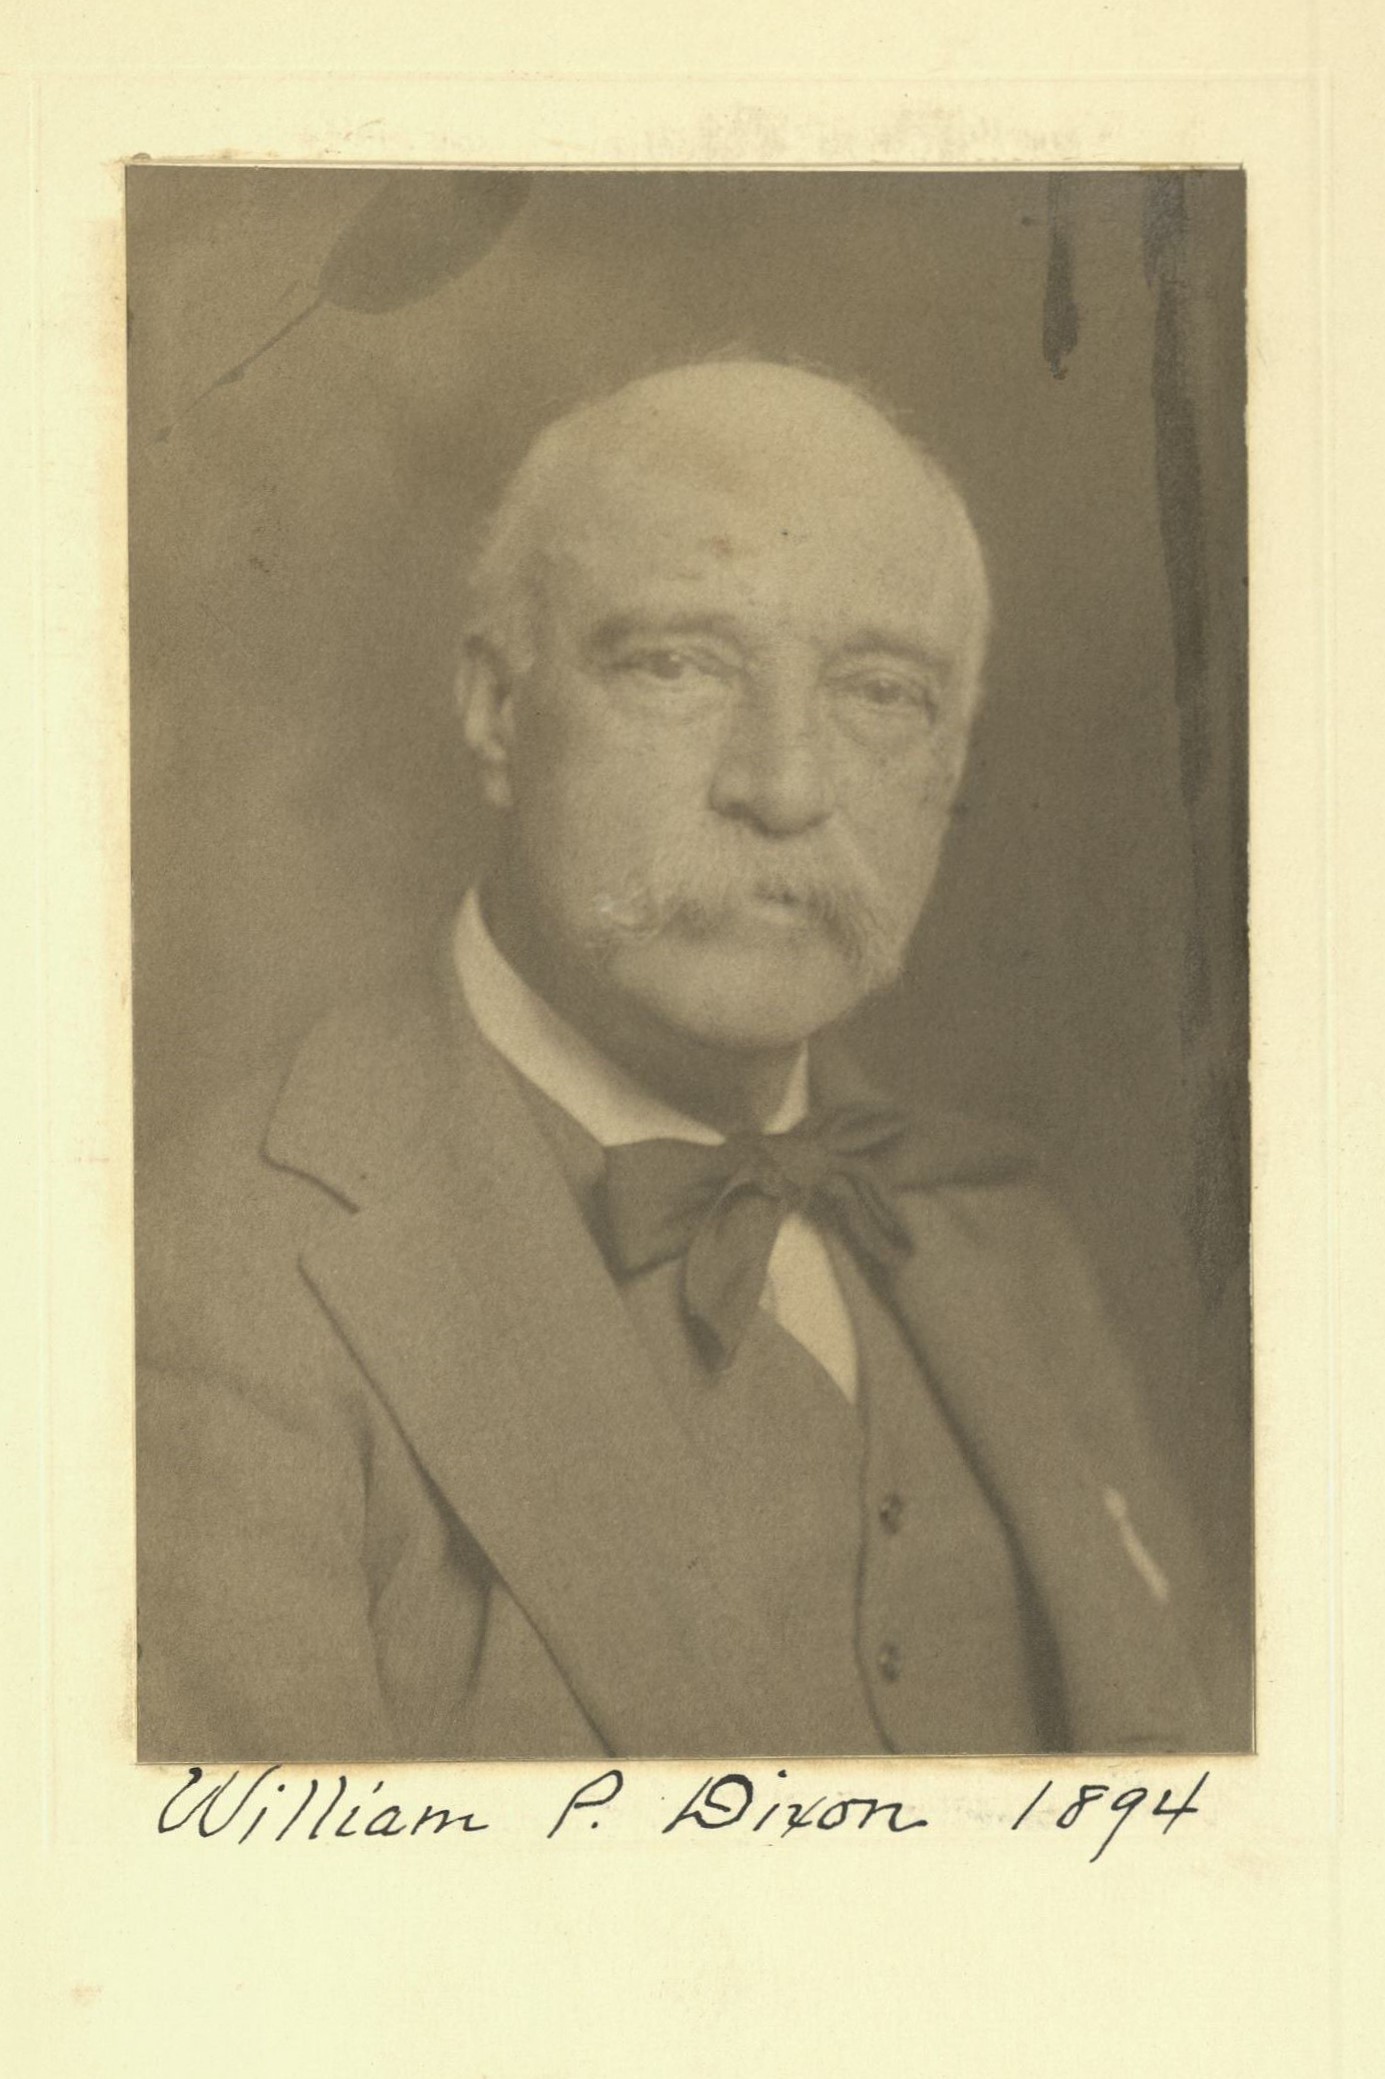 Member portrait of William P. Dixon